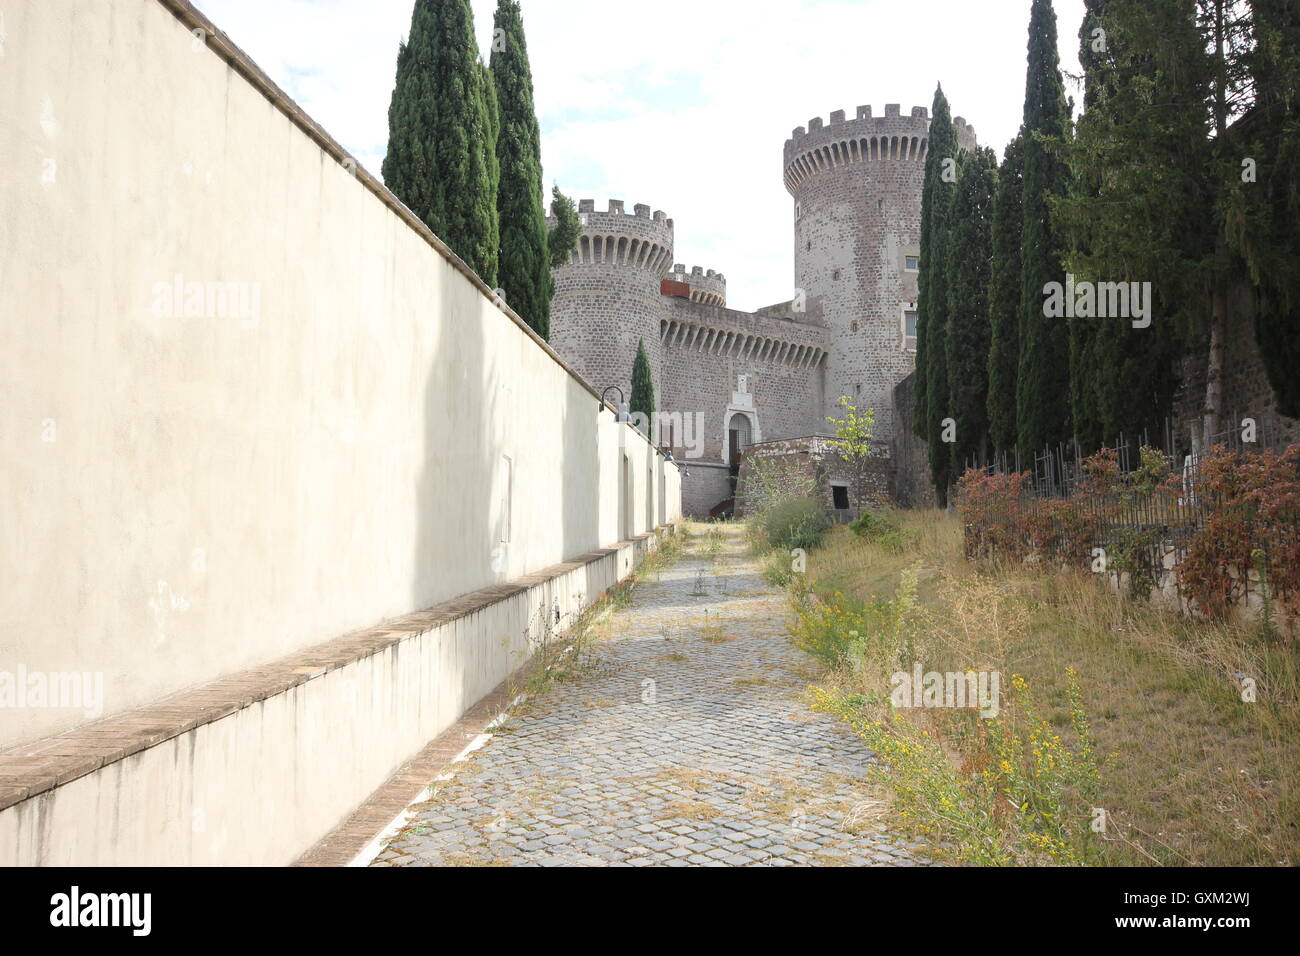 Rocca Pia, das Schloss von Tivoli aus der Ferne, Italien, il Castello di Tivoli, Tourismus, Kunst Städte, Geschichte Stockfoto